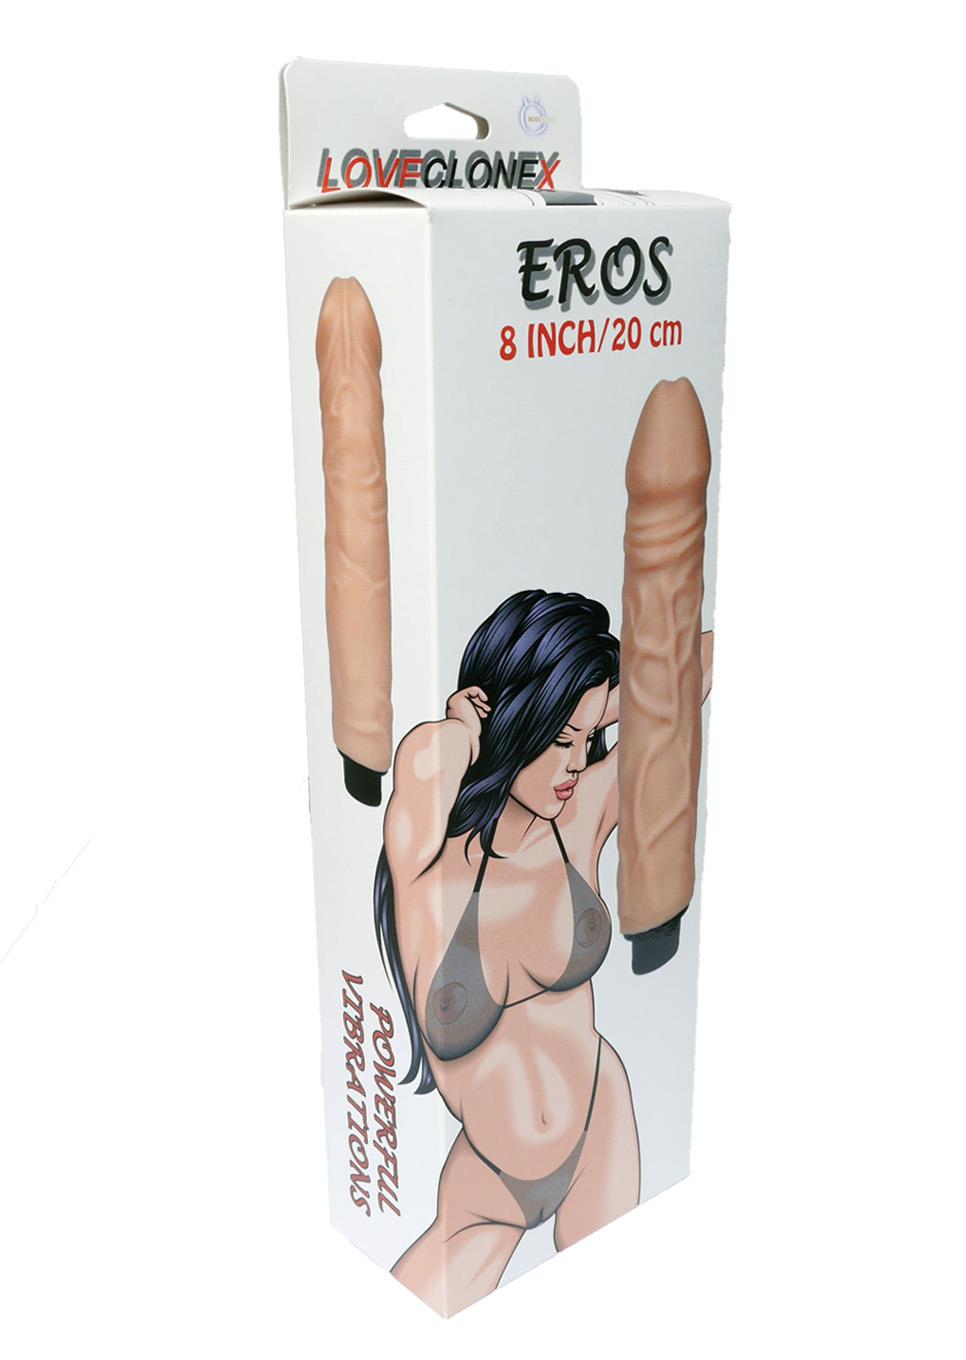 Bossoftoys Eros Love clone X Realistic Vibrator - super flexible Cyberskin material - big size 20 cm  - 8 Inch - flesh colour - Fat boy 4 cm Dia - attractive Colour box - 21-00018